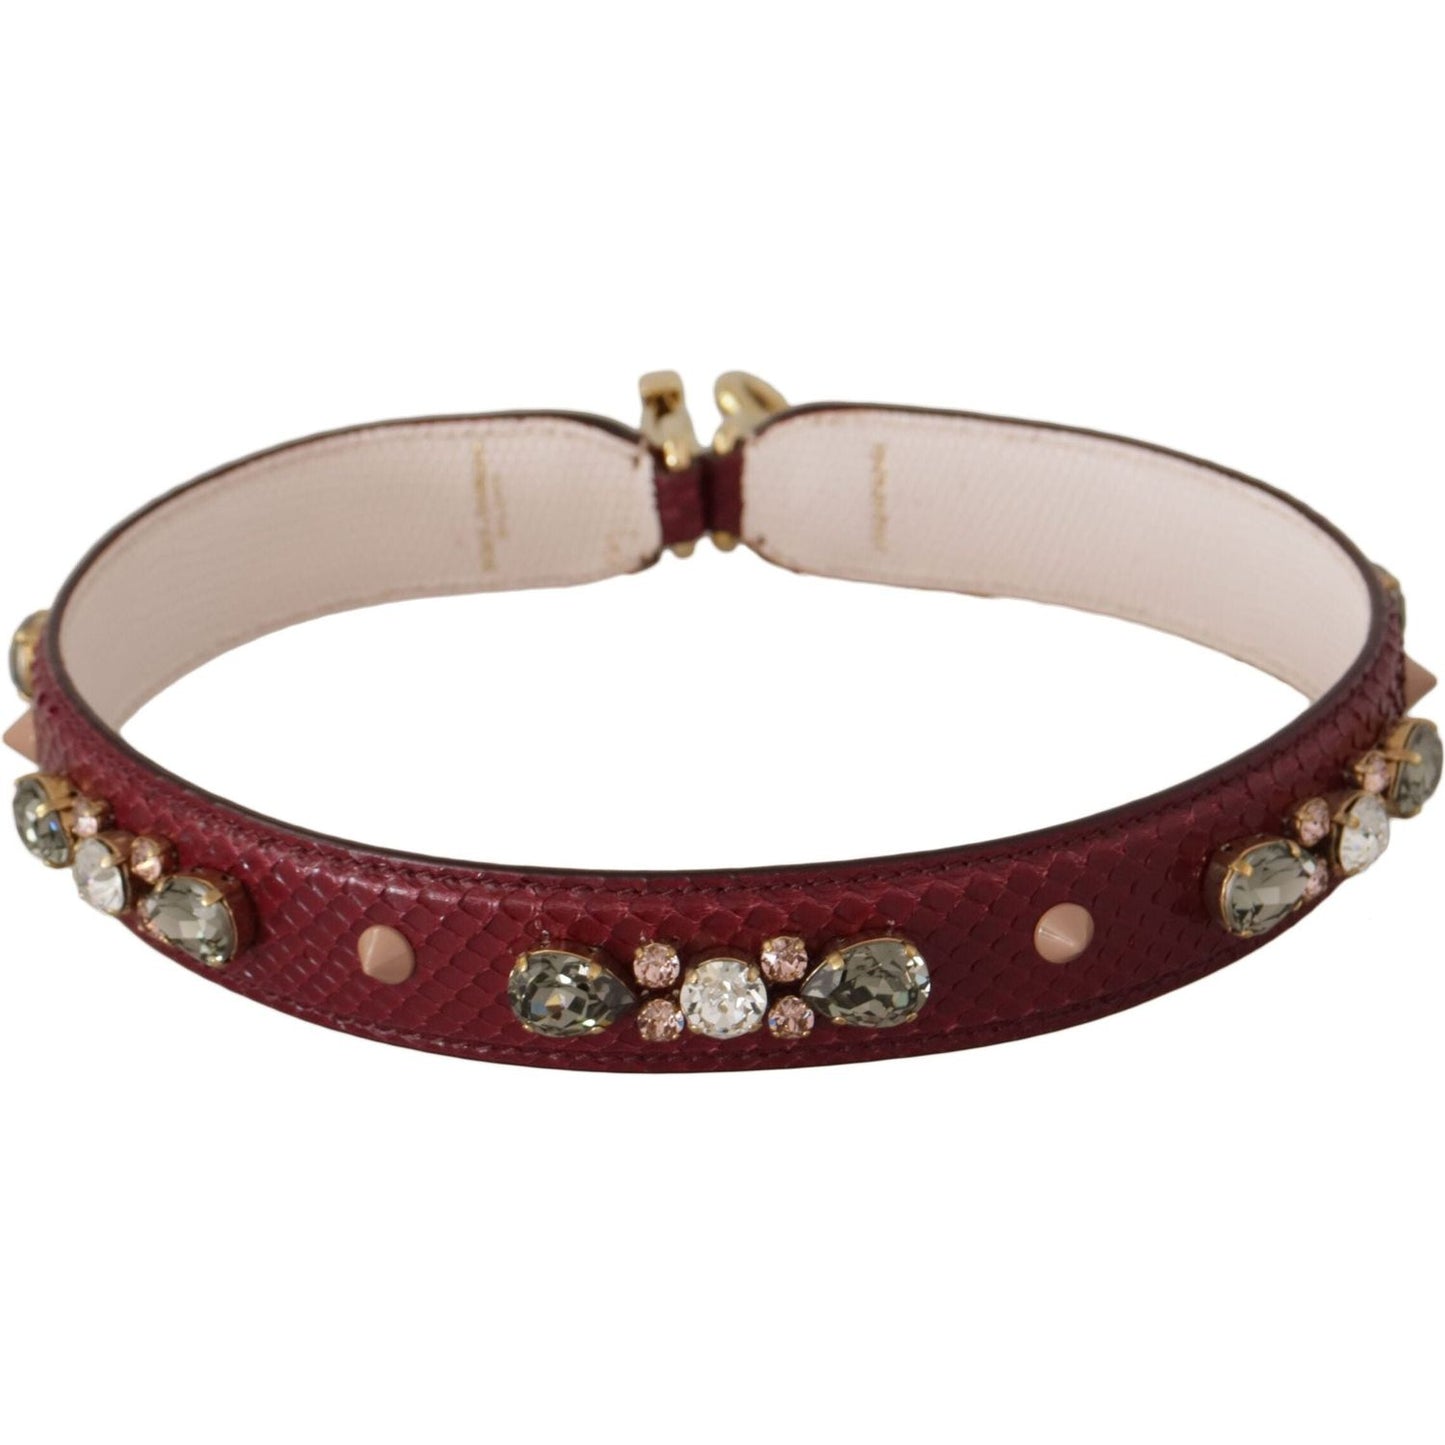 Dolce & Gabbana Elegant Python Leather Bag Strap in Bordeaux bordeaux-leather-crystals-bag-shoulder-strap IMG_9720-2-scaled-239584ed-6e9.jpg